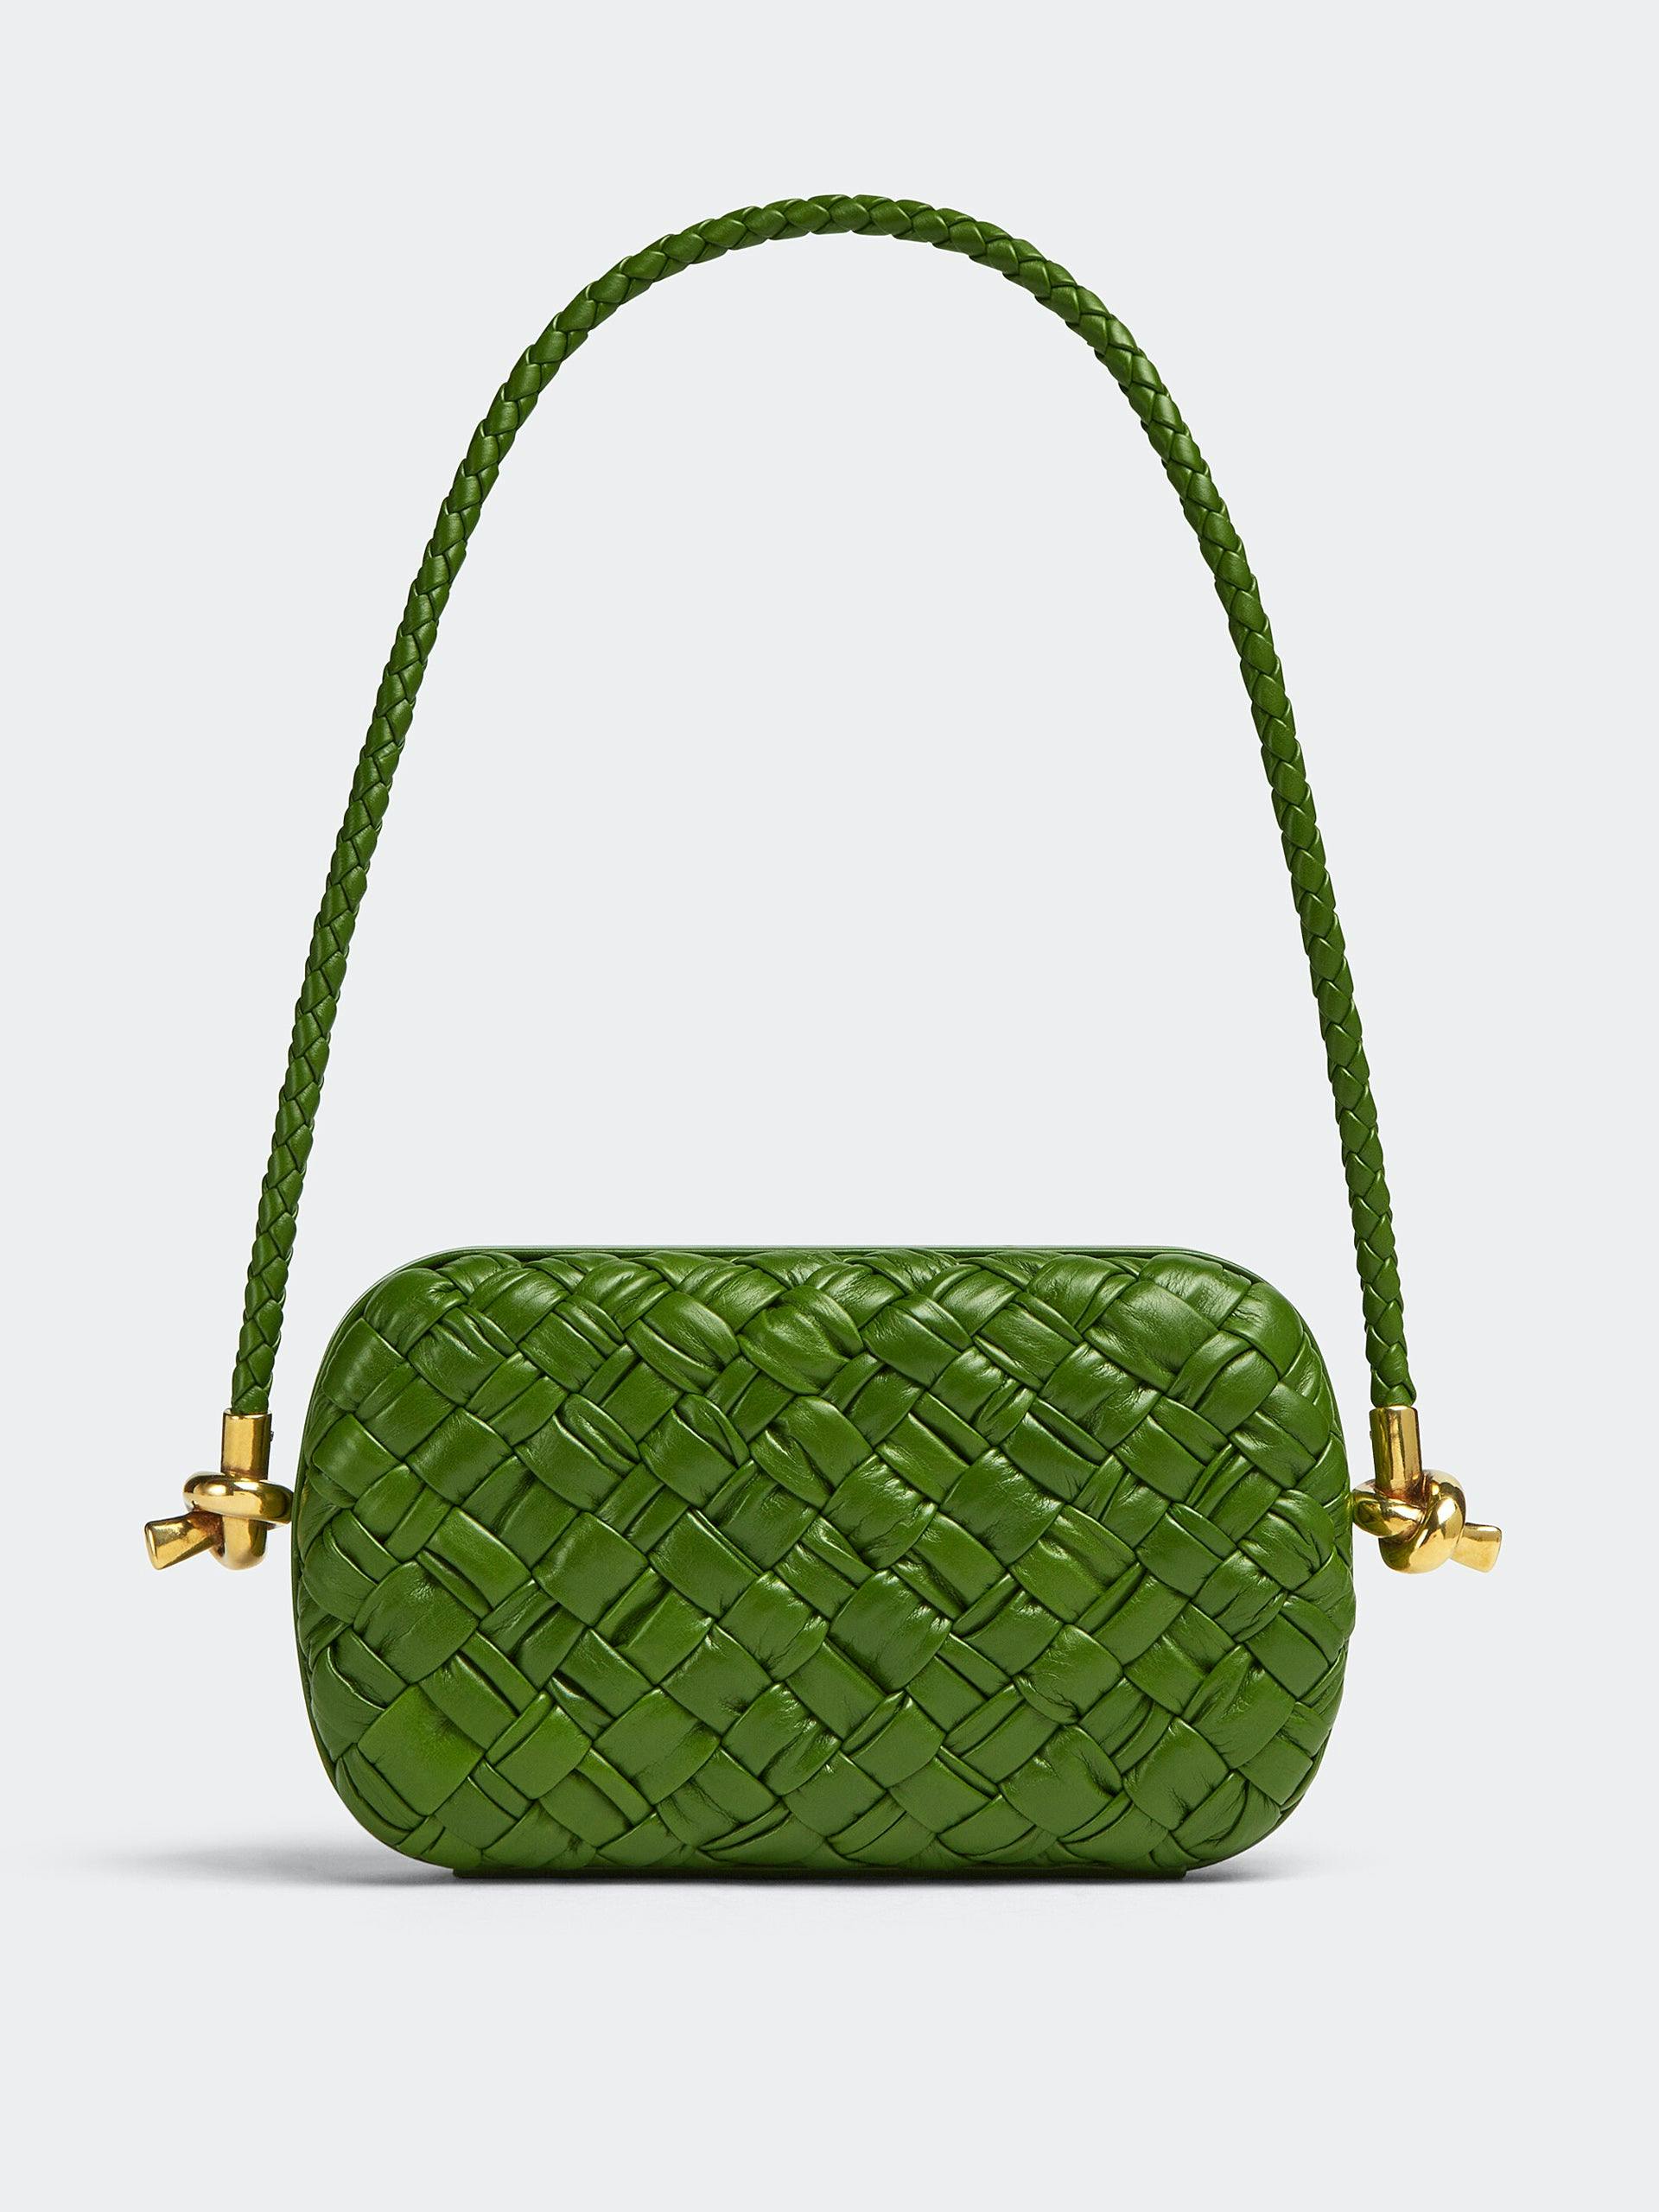 Green knotted leather shoulder bag